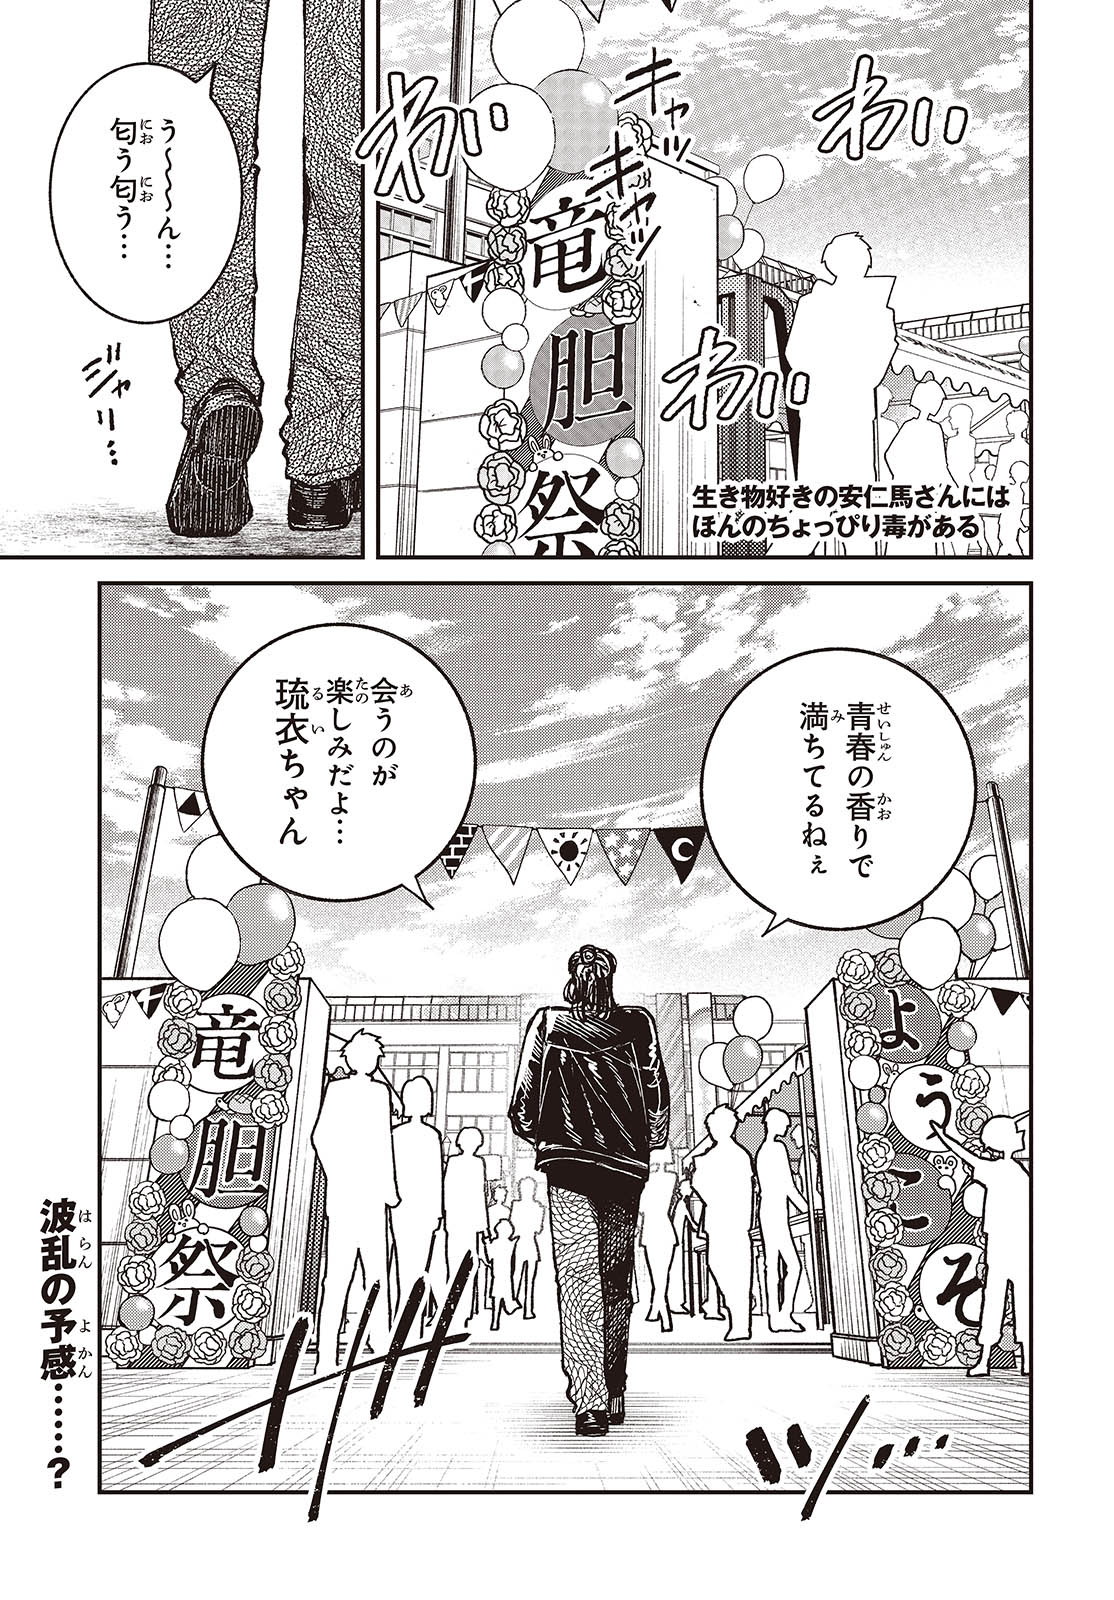 Ikimono-suki no Anima-san ni wa Honno Choppiri Doku ga aru - Chapter 12 - Page 1